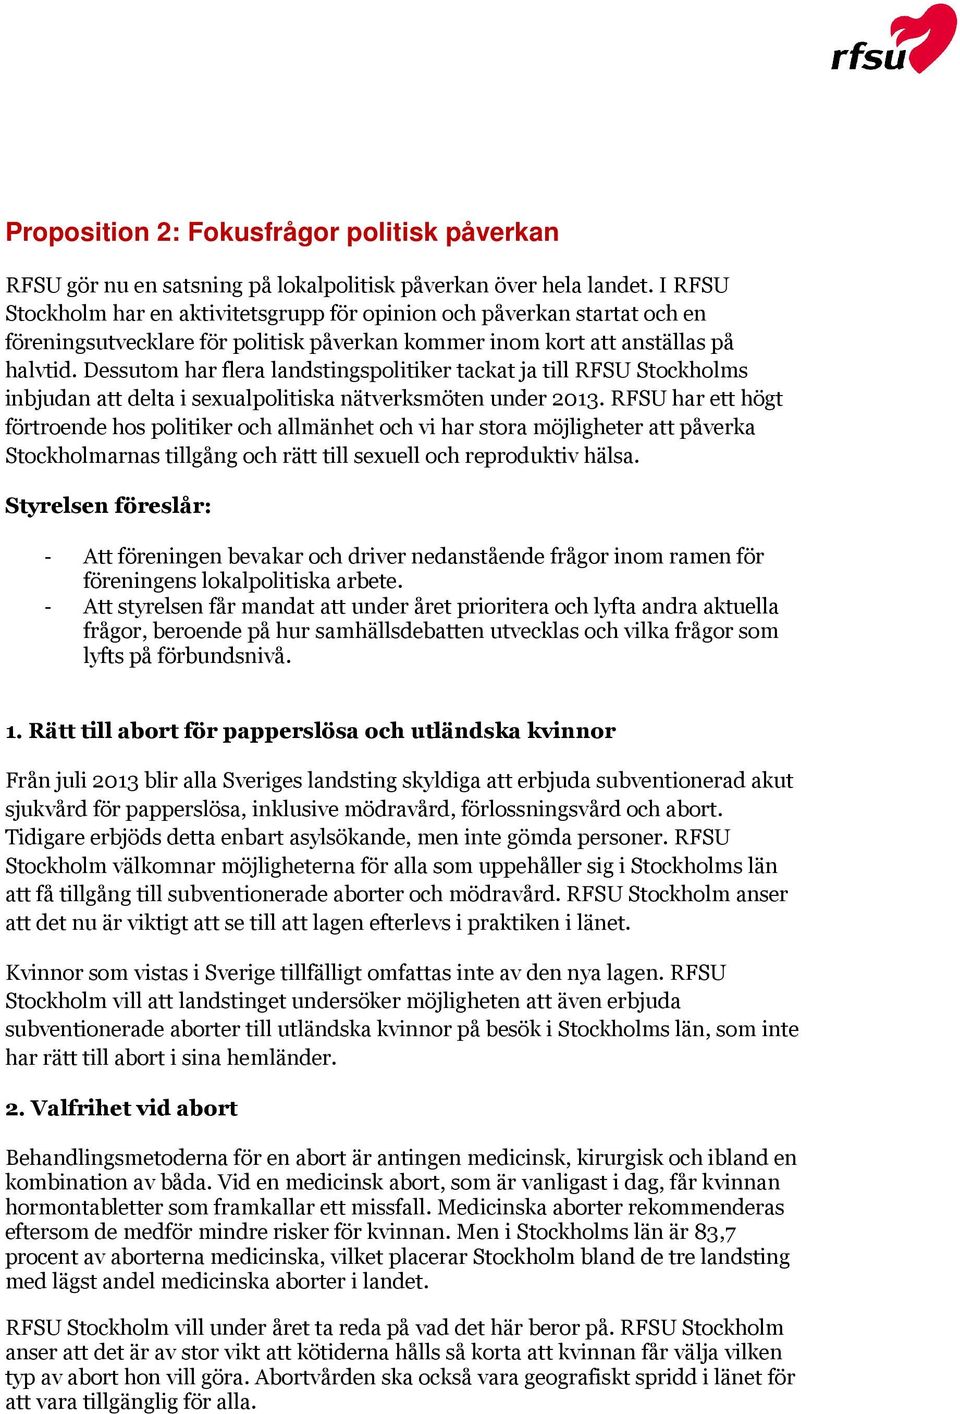 Dessutom har flera landstingspolitiker tackat ja till RFSU Stockholms inbjudan att delta i sexualpolitiska nätverksmöten under 2013.